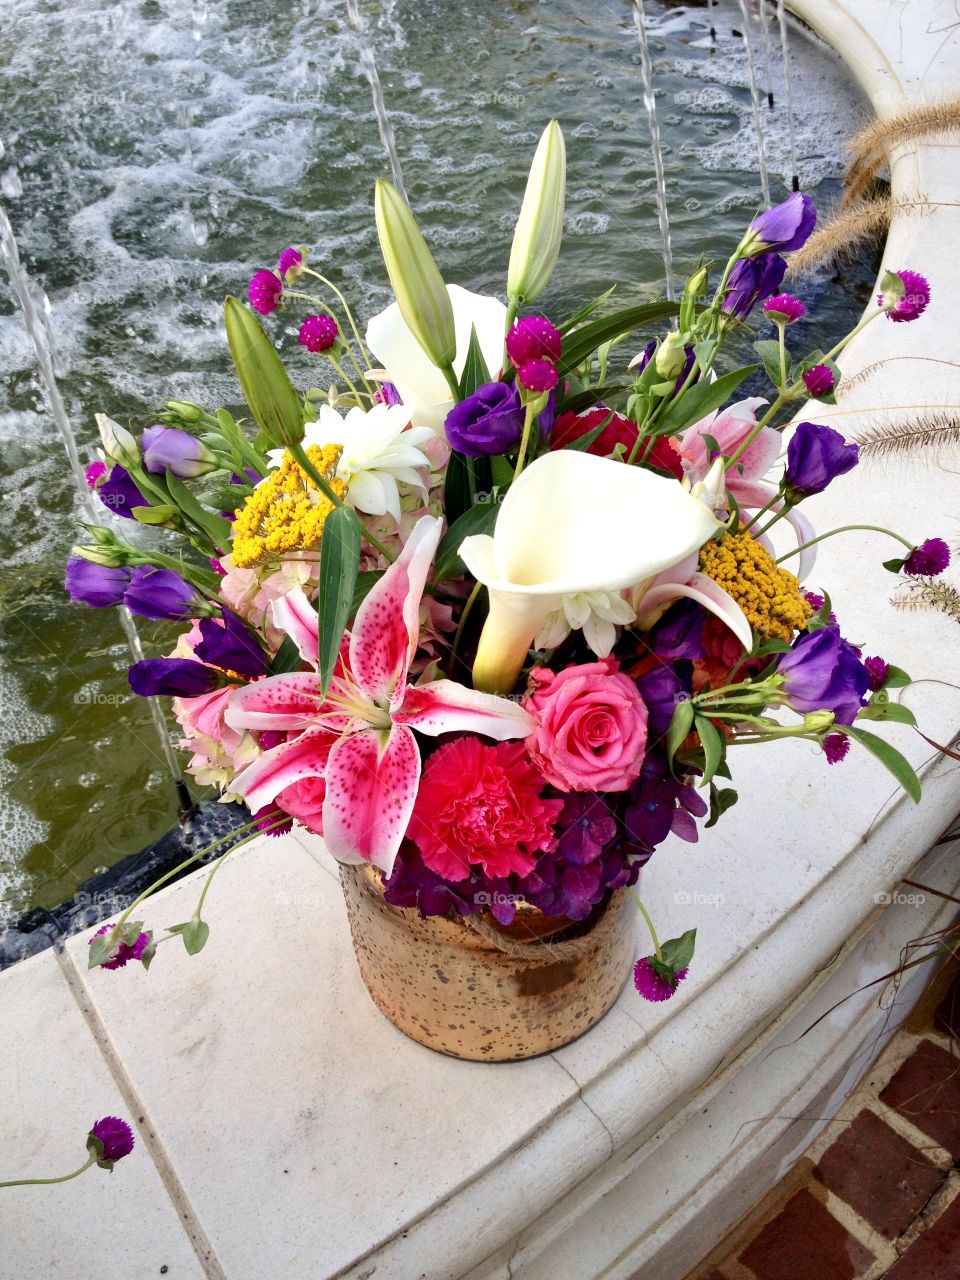 Flower arrangement for an outdoor wedding